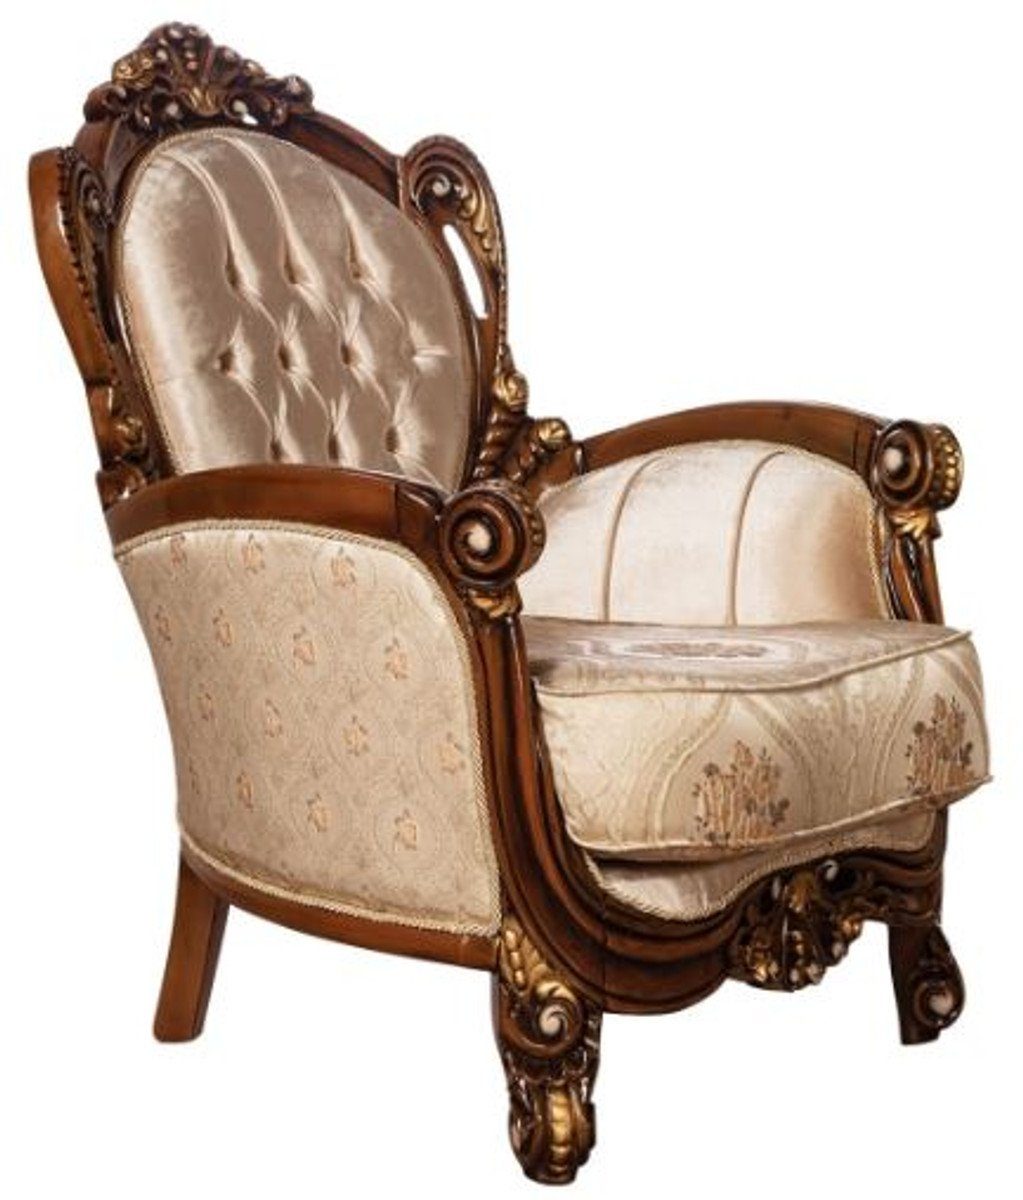 Casa Padrino Sessel Luxus Barock Wohnzimmer Sessel Beige / Braun / Gold - Prunkvoller Sessel mit elegantem Muster - Handgefertigte Barock Wohnzimmer Möbel